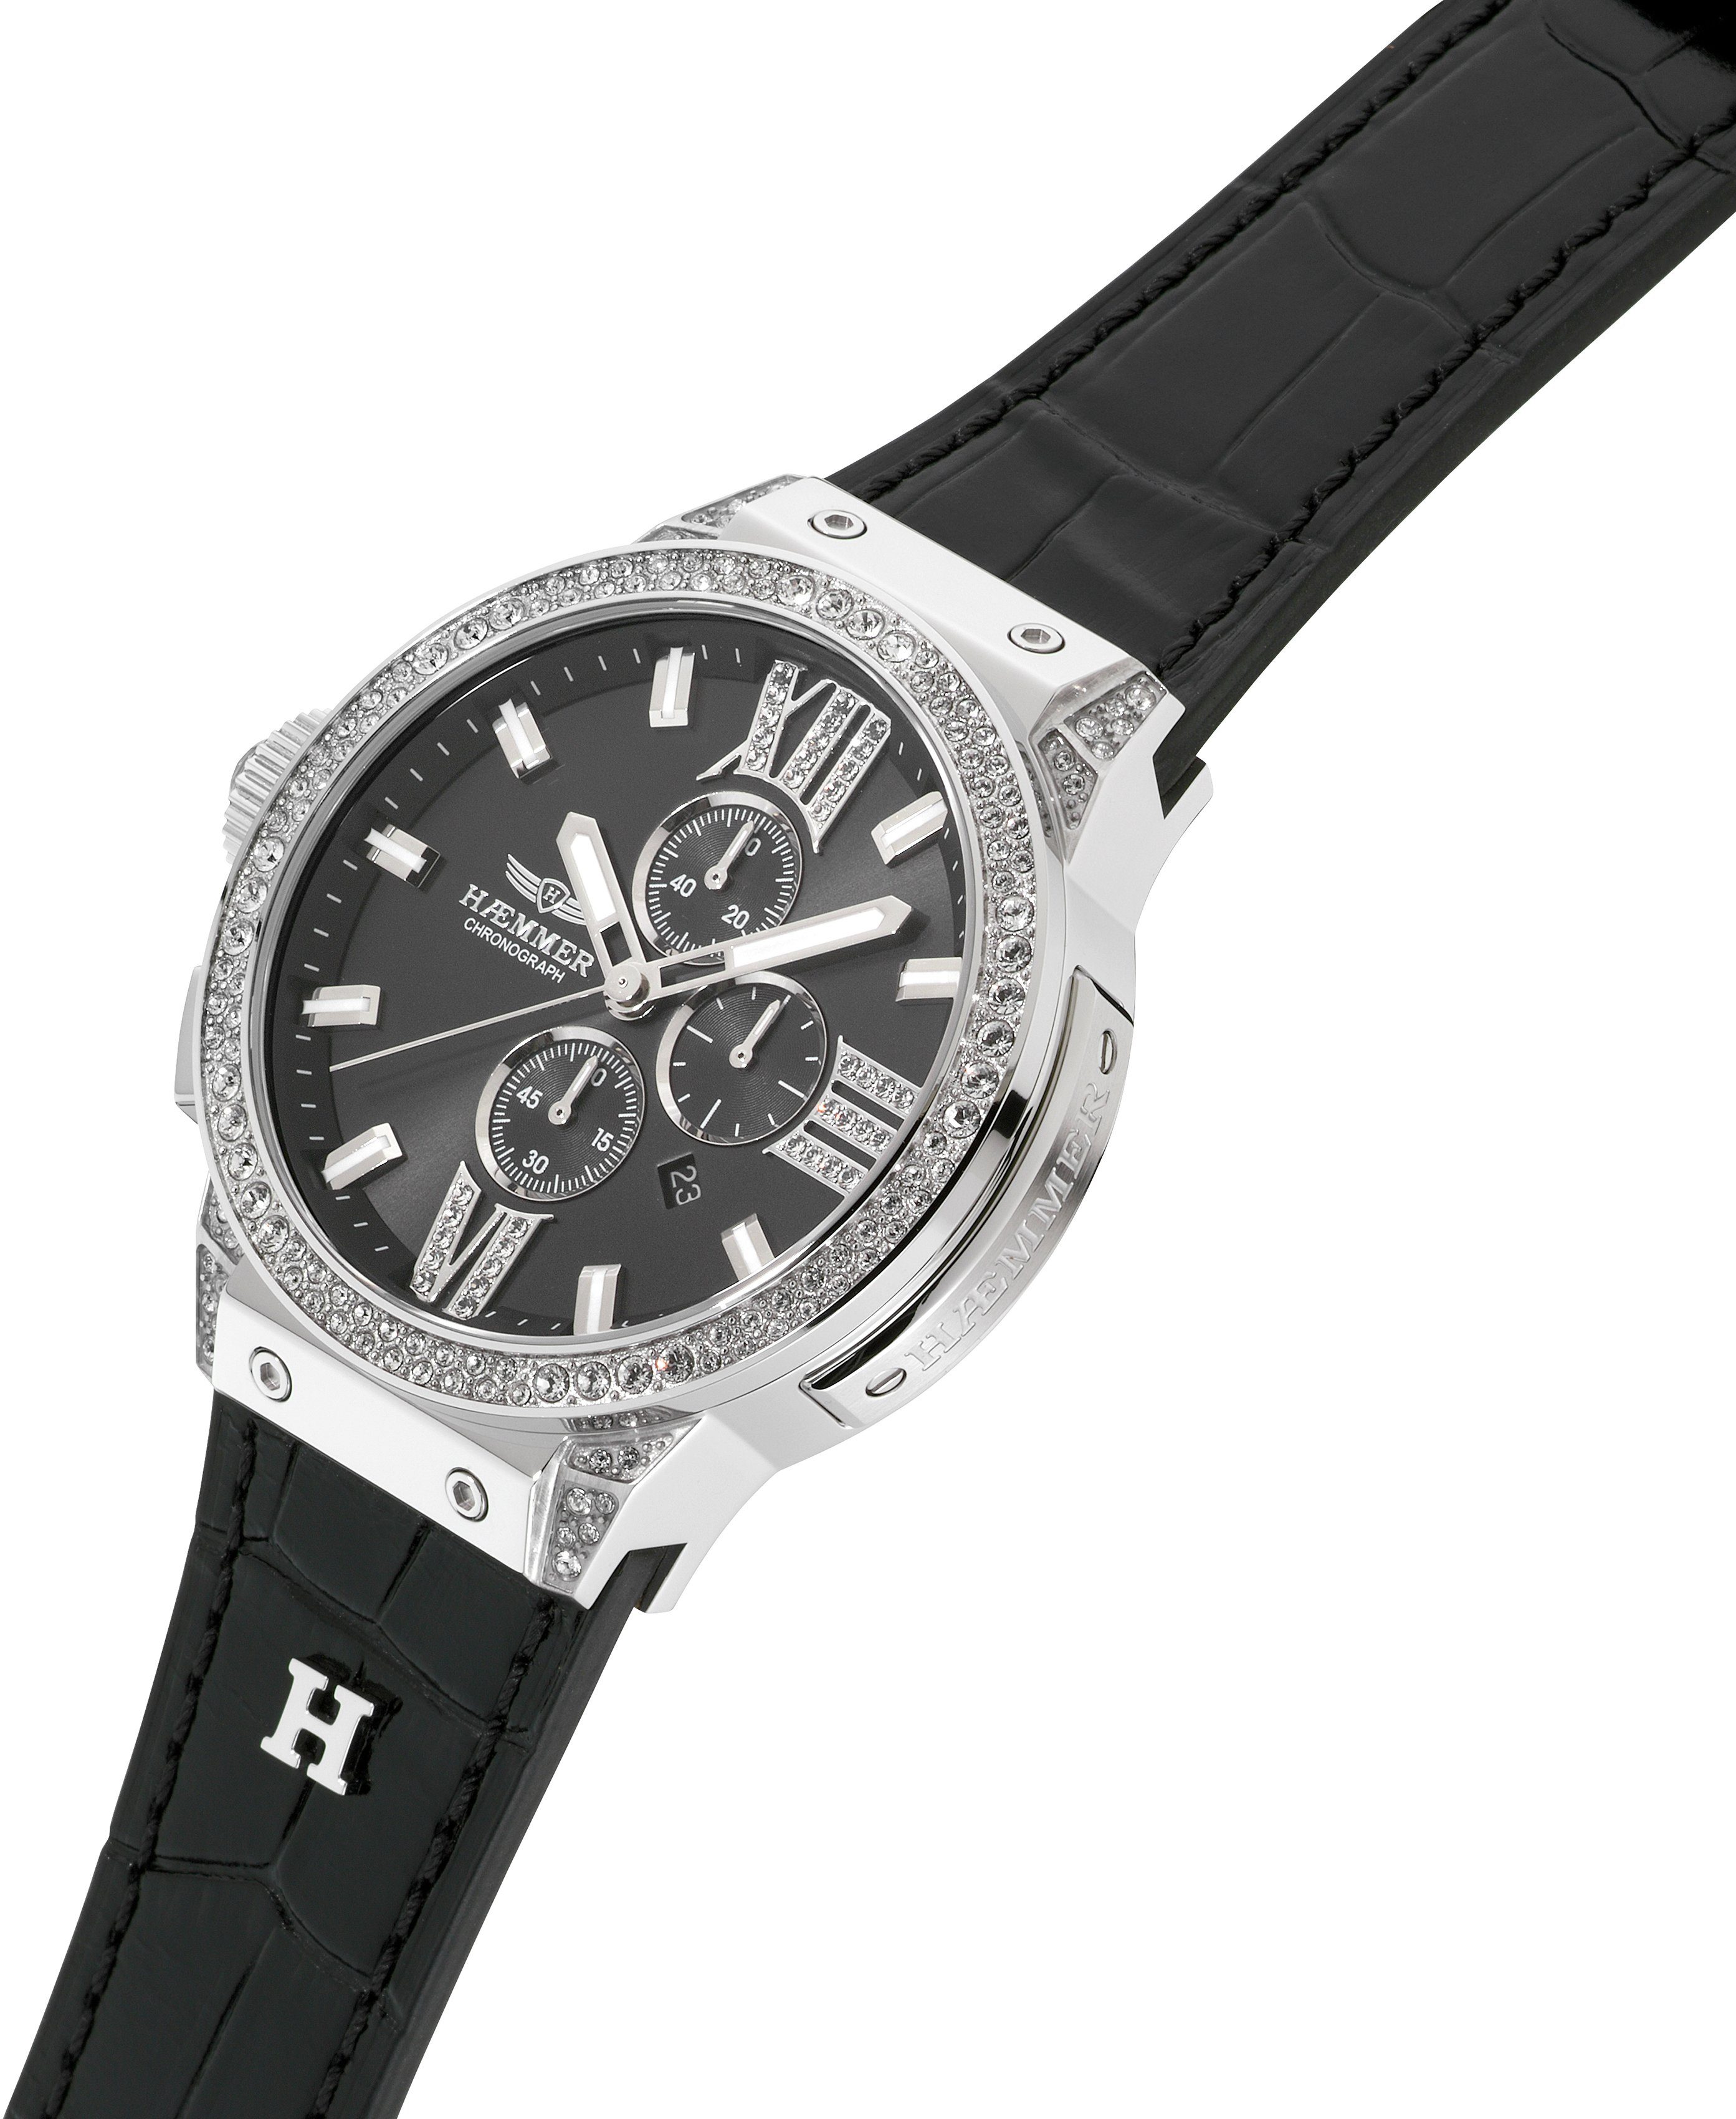 Damen Uhren HAEMMER GERMANY Chronograph CLASSY, E-017